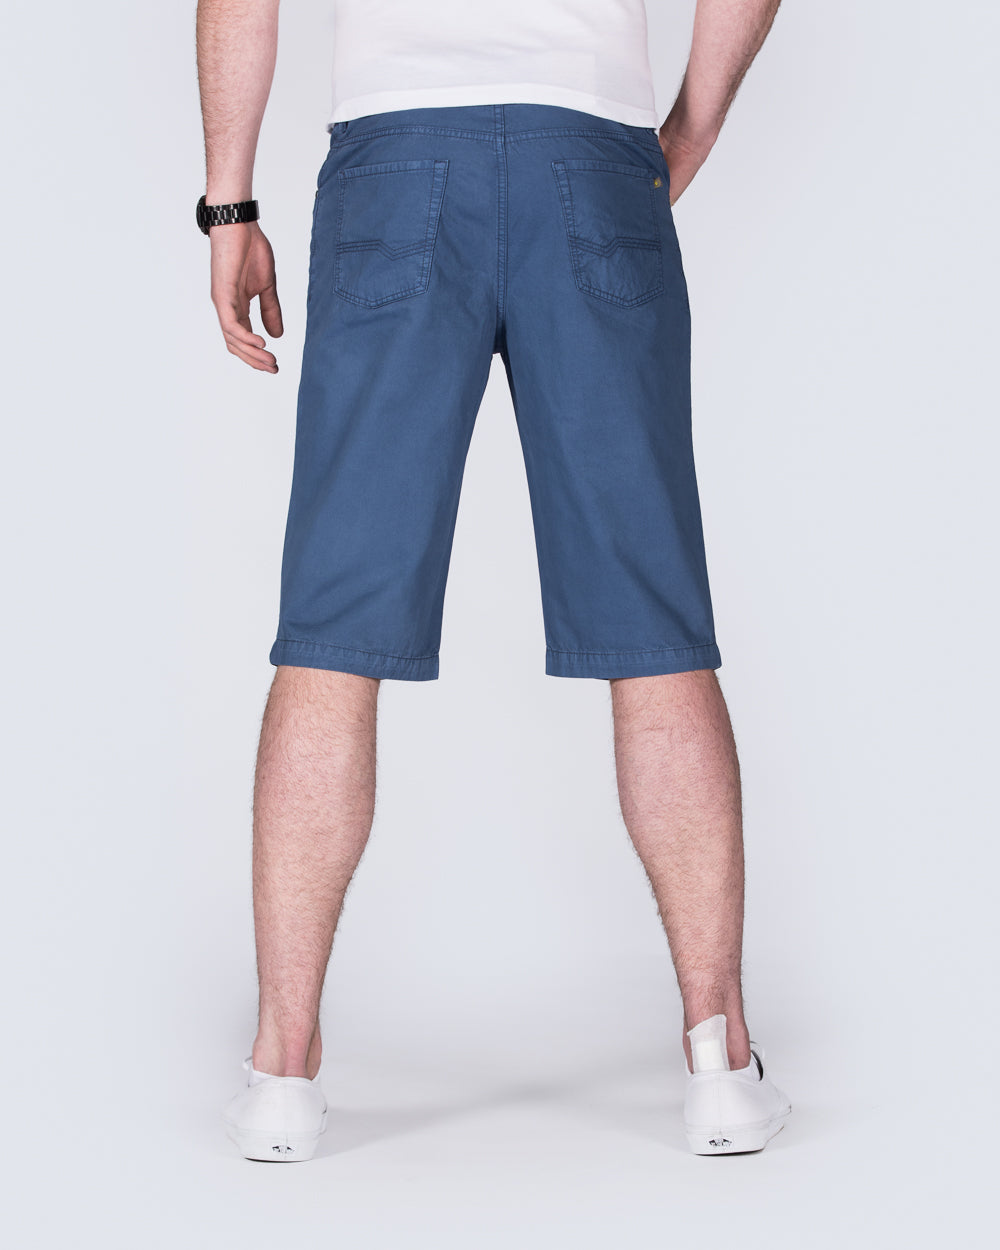 Redpoint Brant Tall Shorts (indigo)